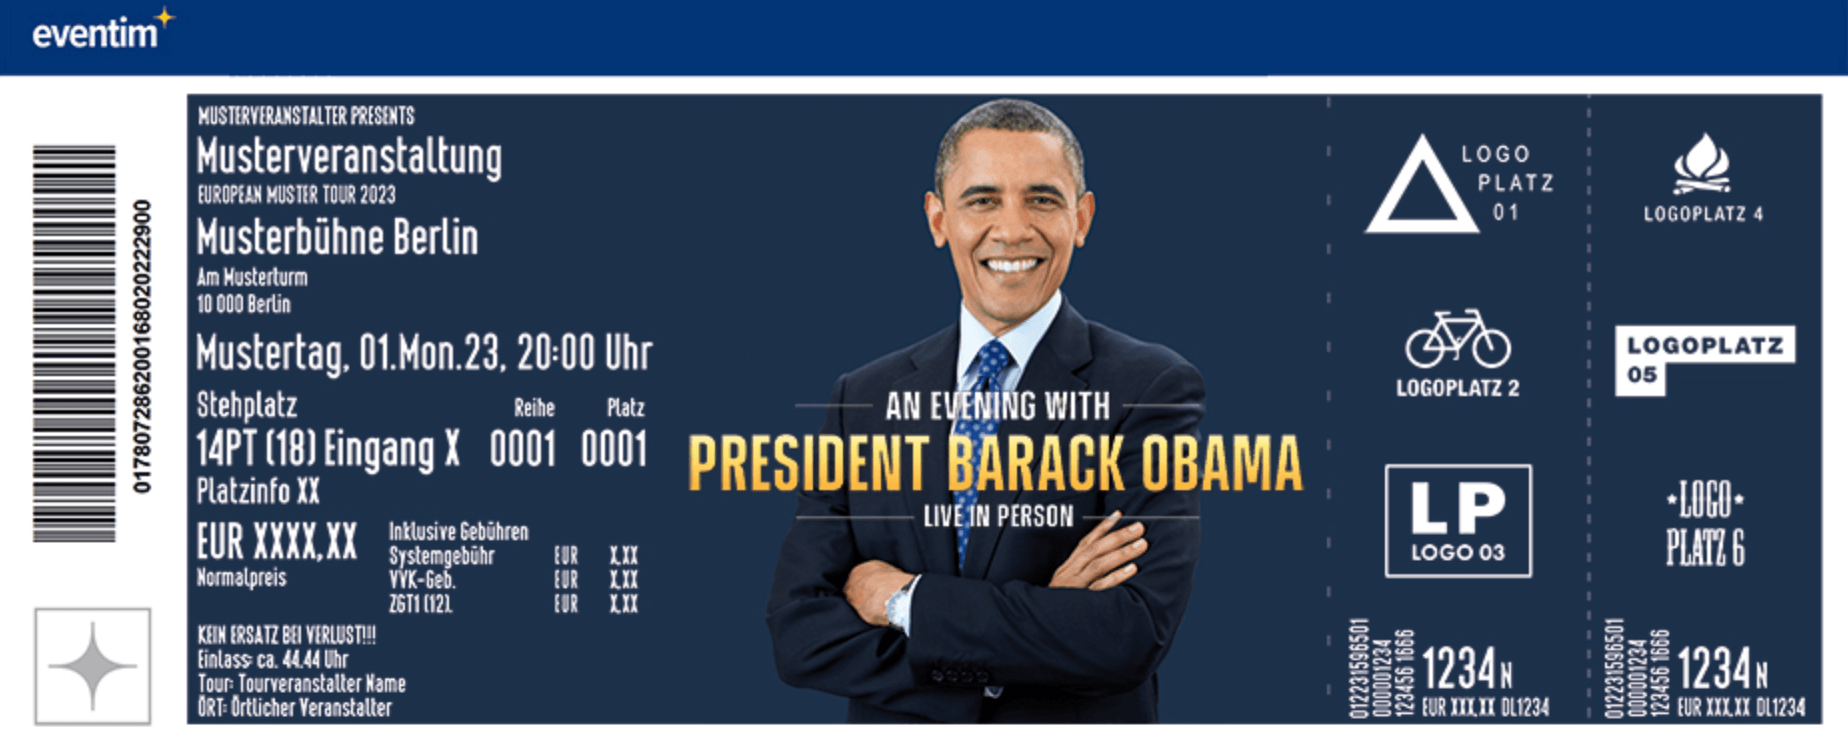 Ticket-Beispiel für den Obama-Abend in Berlin.